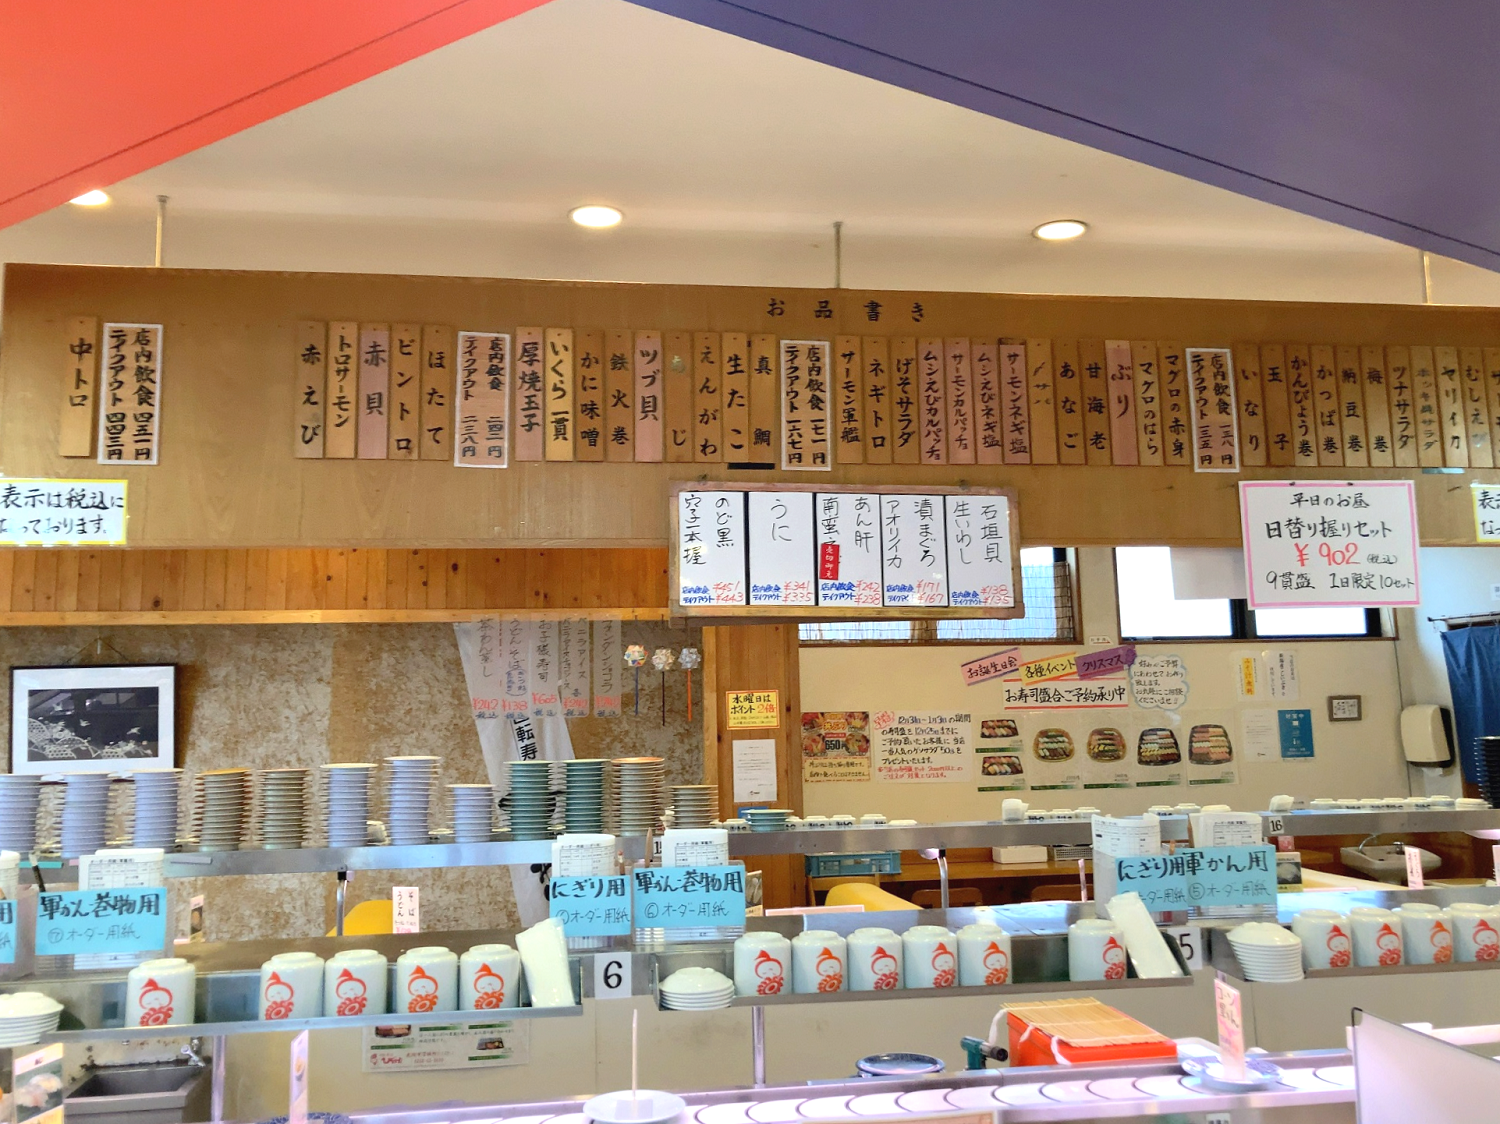 回転寿司 ひまわり｜ ぷく太郎 | 見附市学校町| 新潟の回転寿司 美味し 